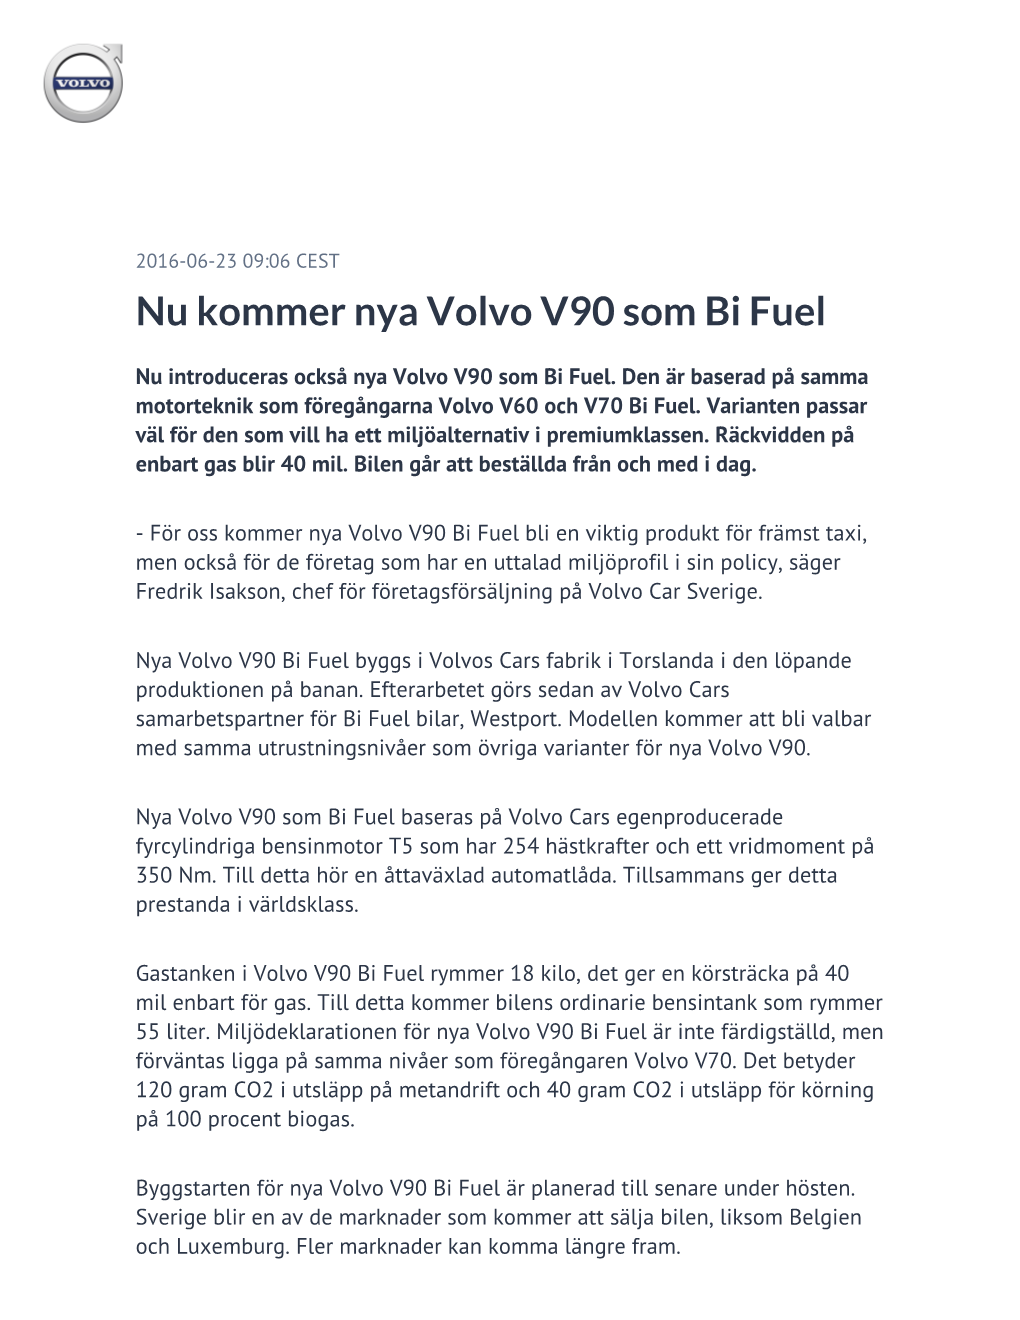 Nu Kommer Nya Volvo V90 Som Bi Fuel